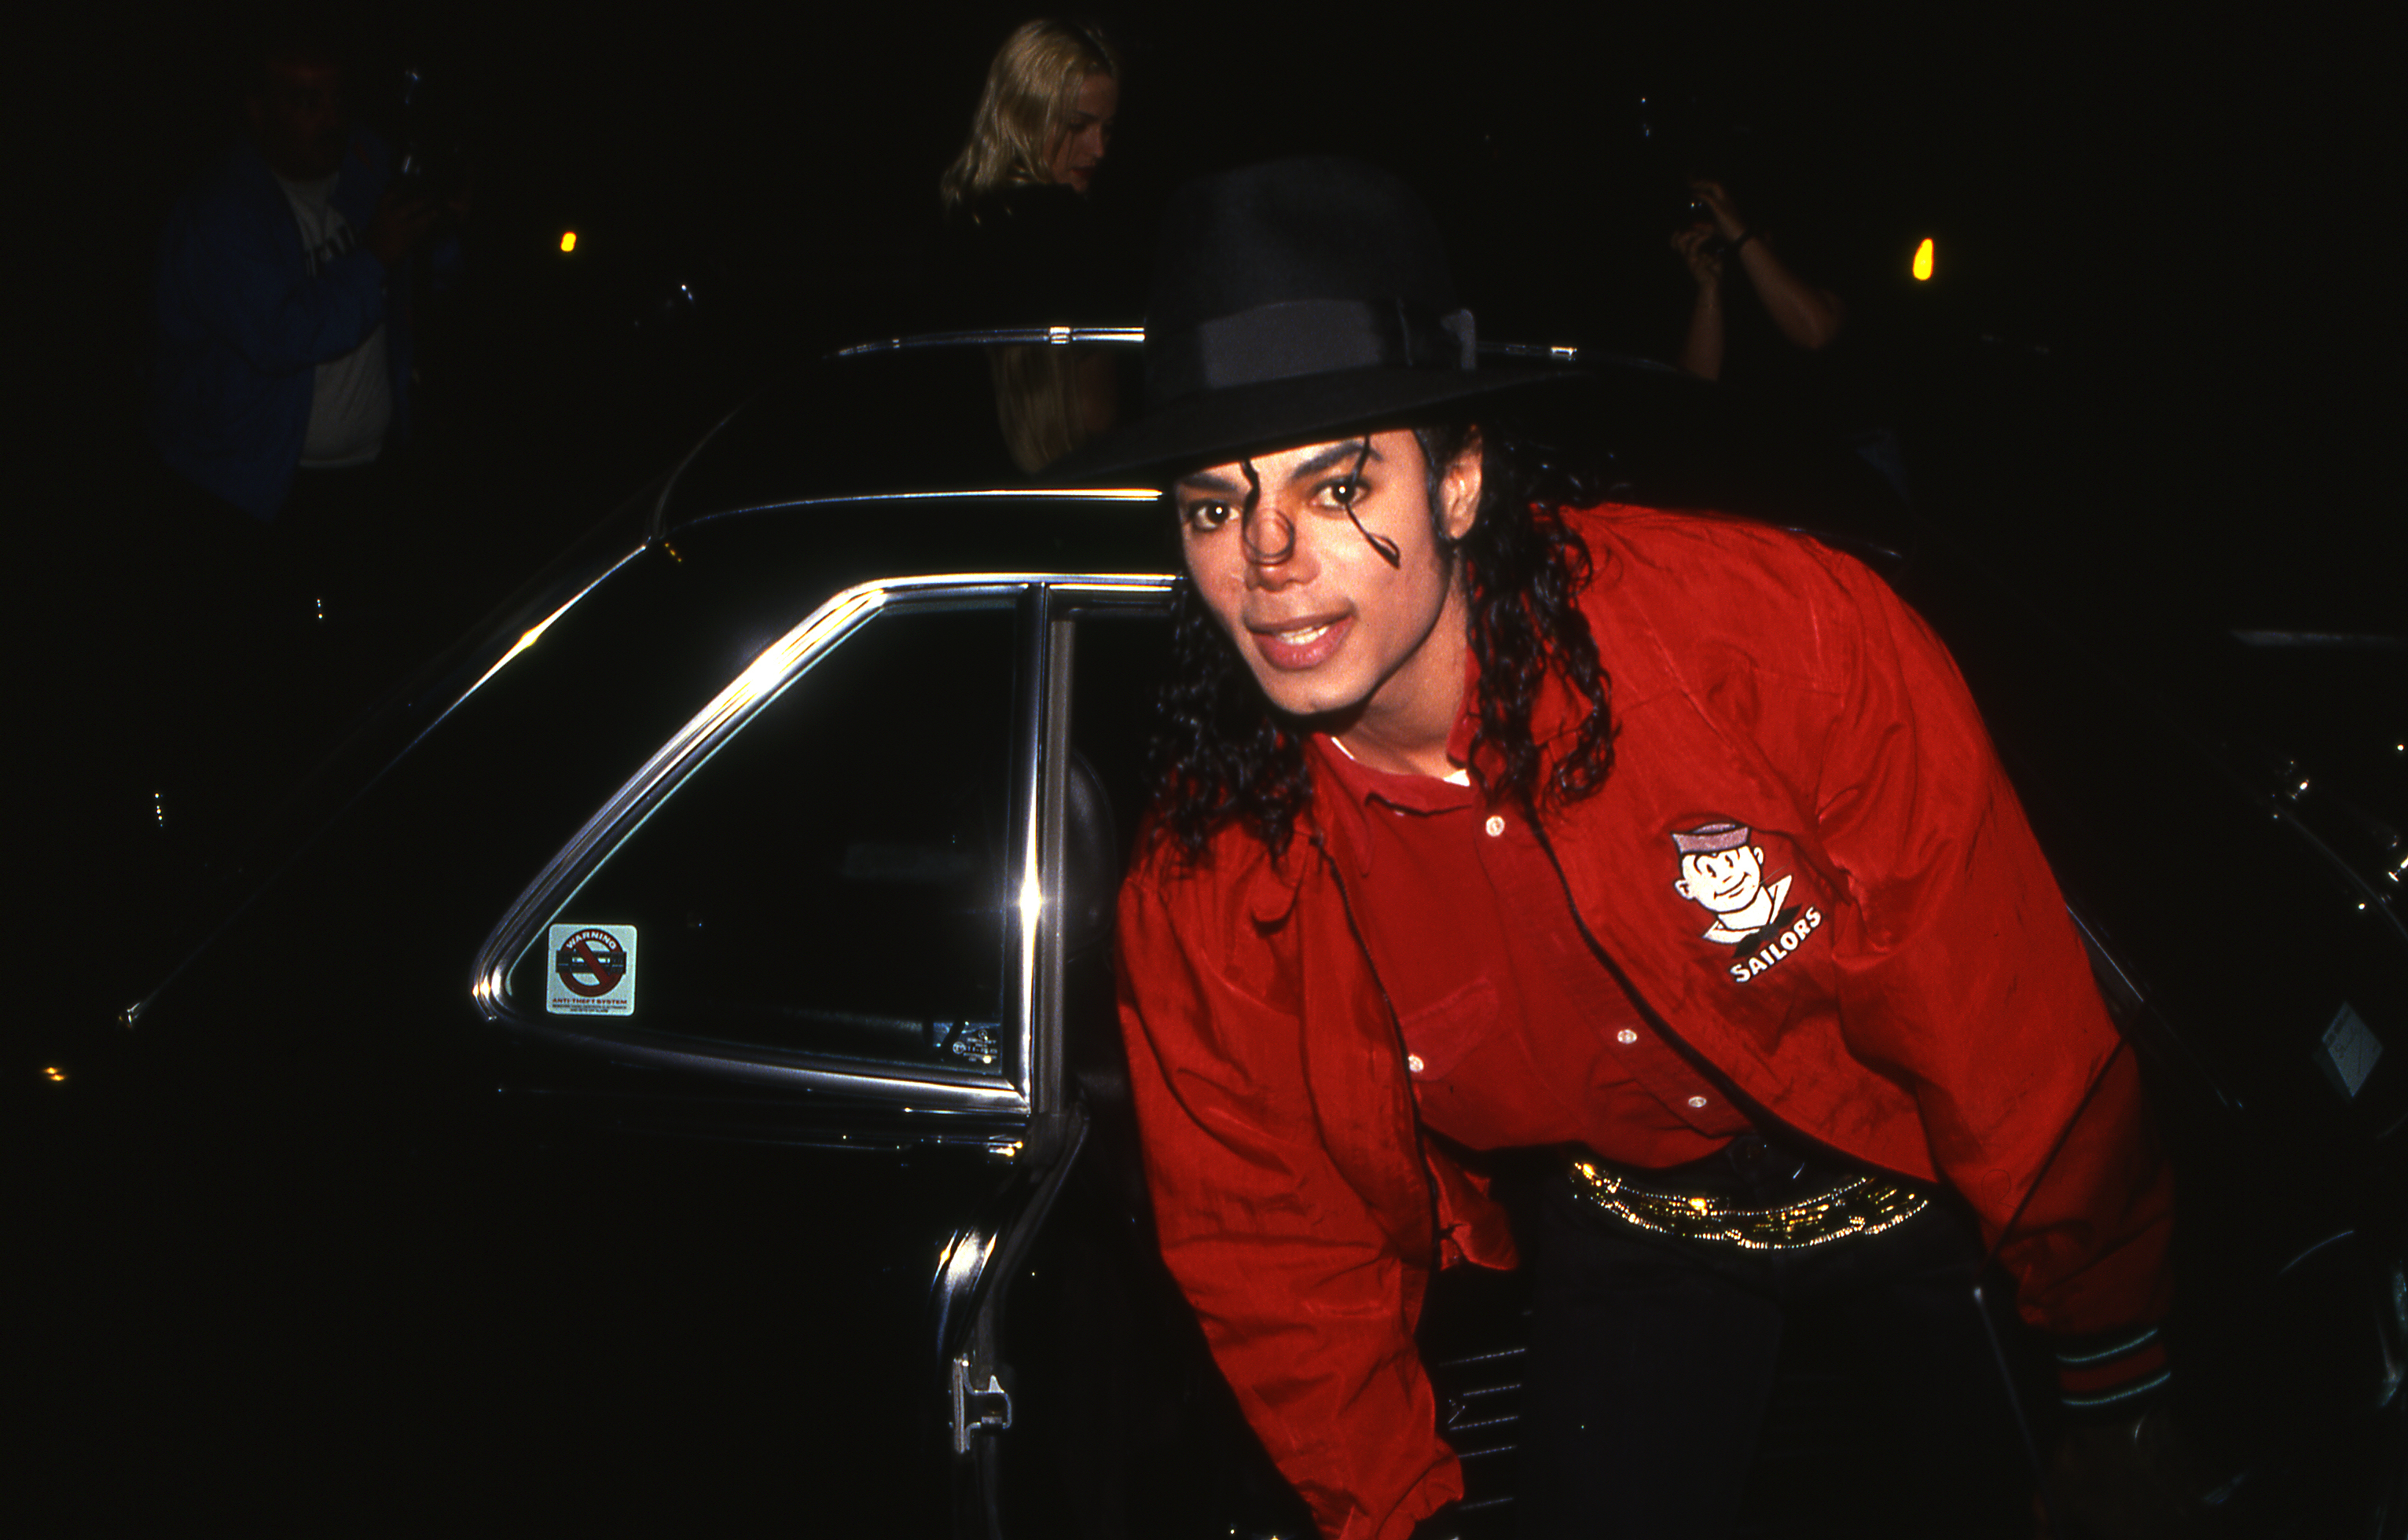 La familia de Michael Jackson niega que el cantante haya cometido actos inapropiados con menores de edad (Foto Prensa Libre: Shutterstock)